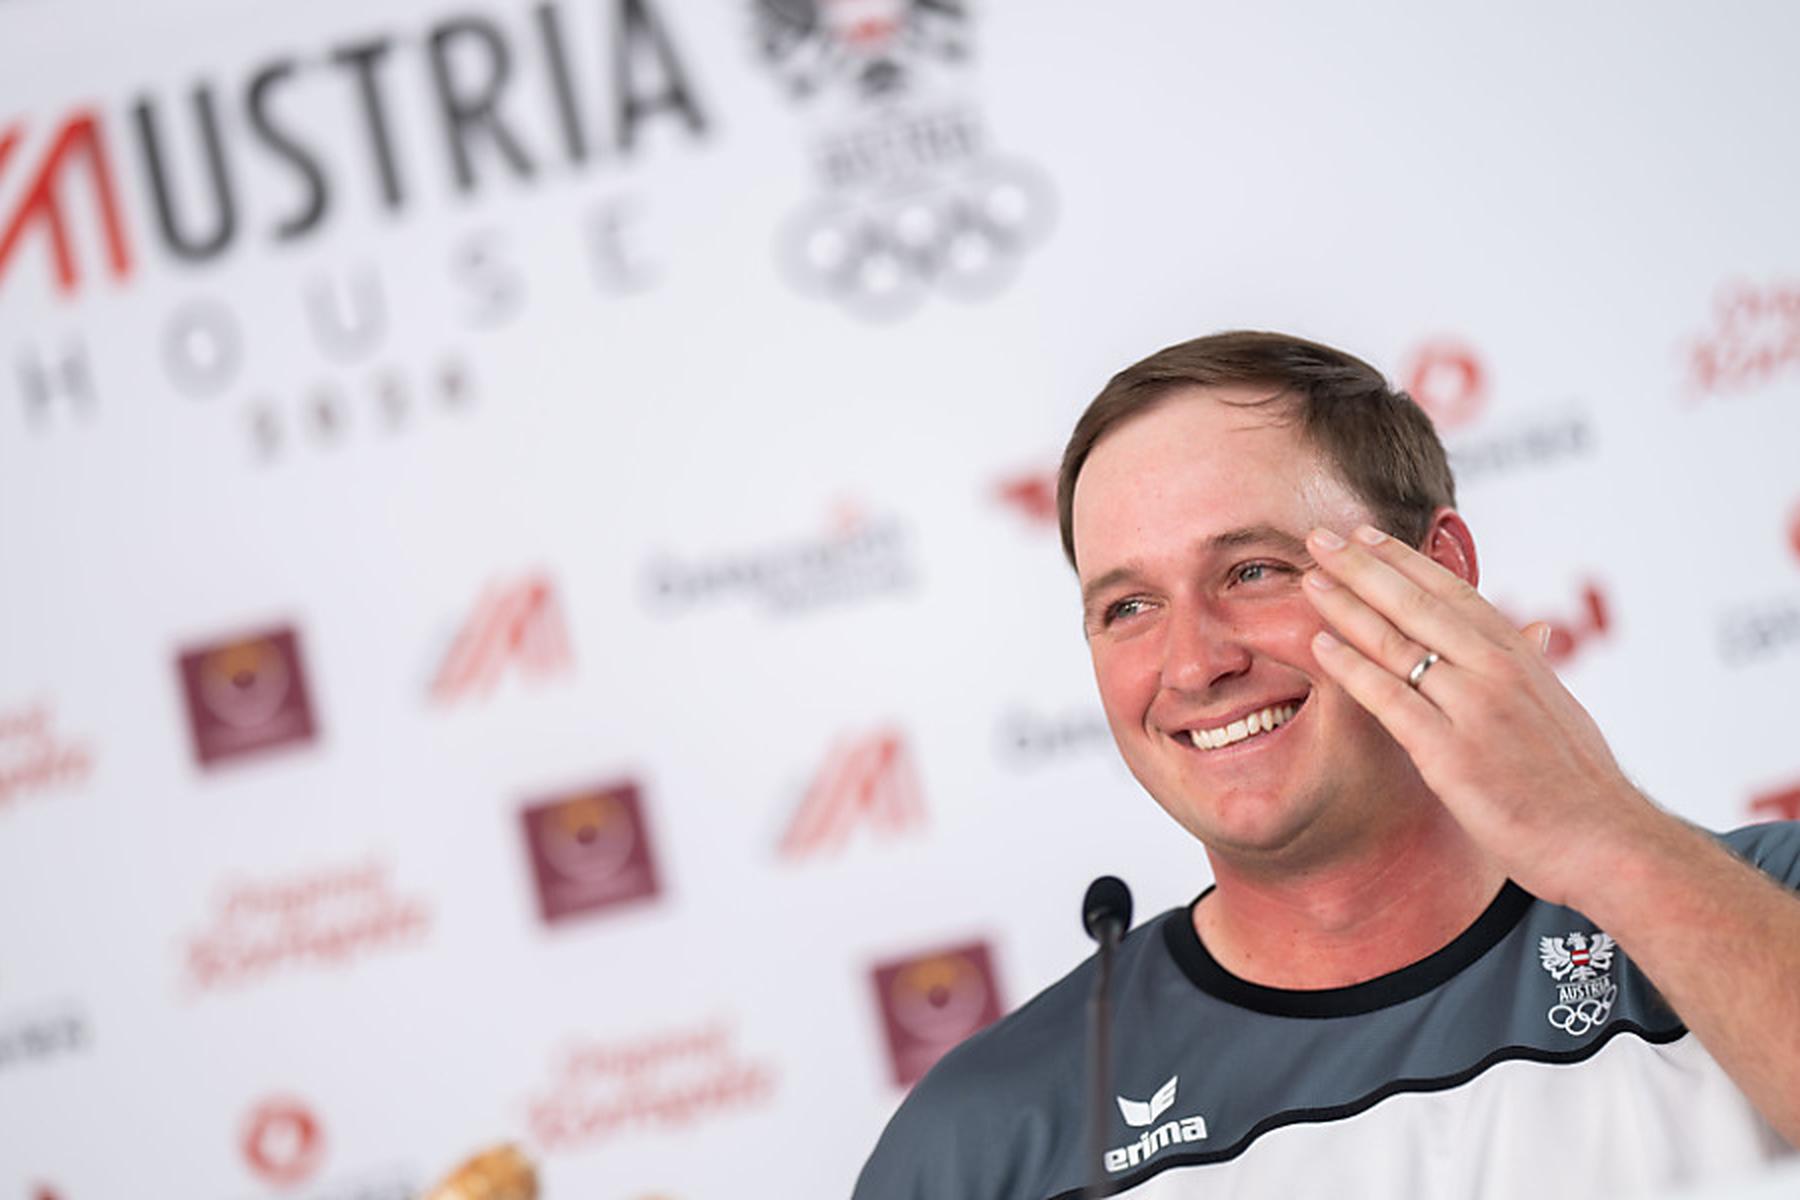 Paris: Golfer Straka freut sich auf Antreten bei Olympia